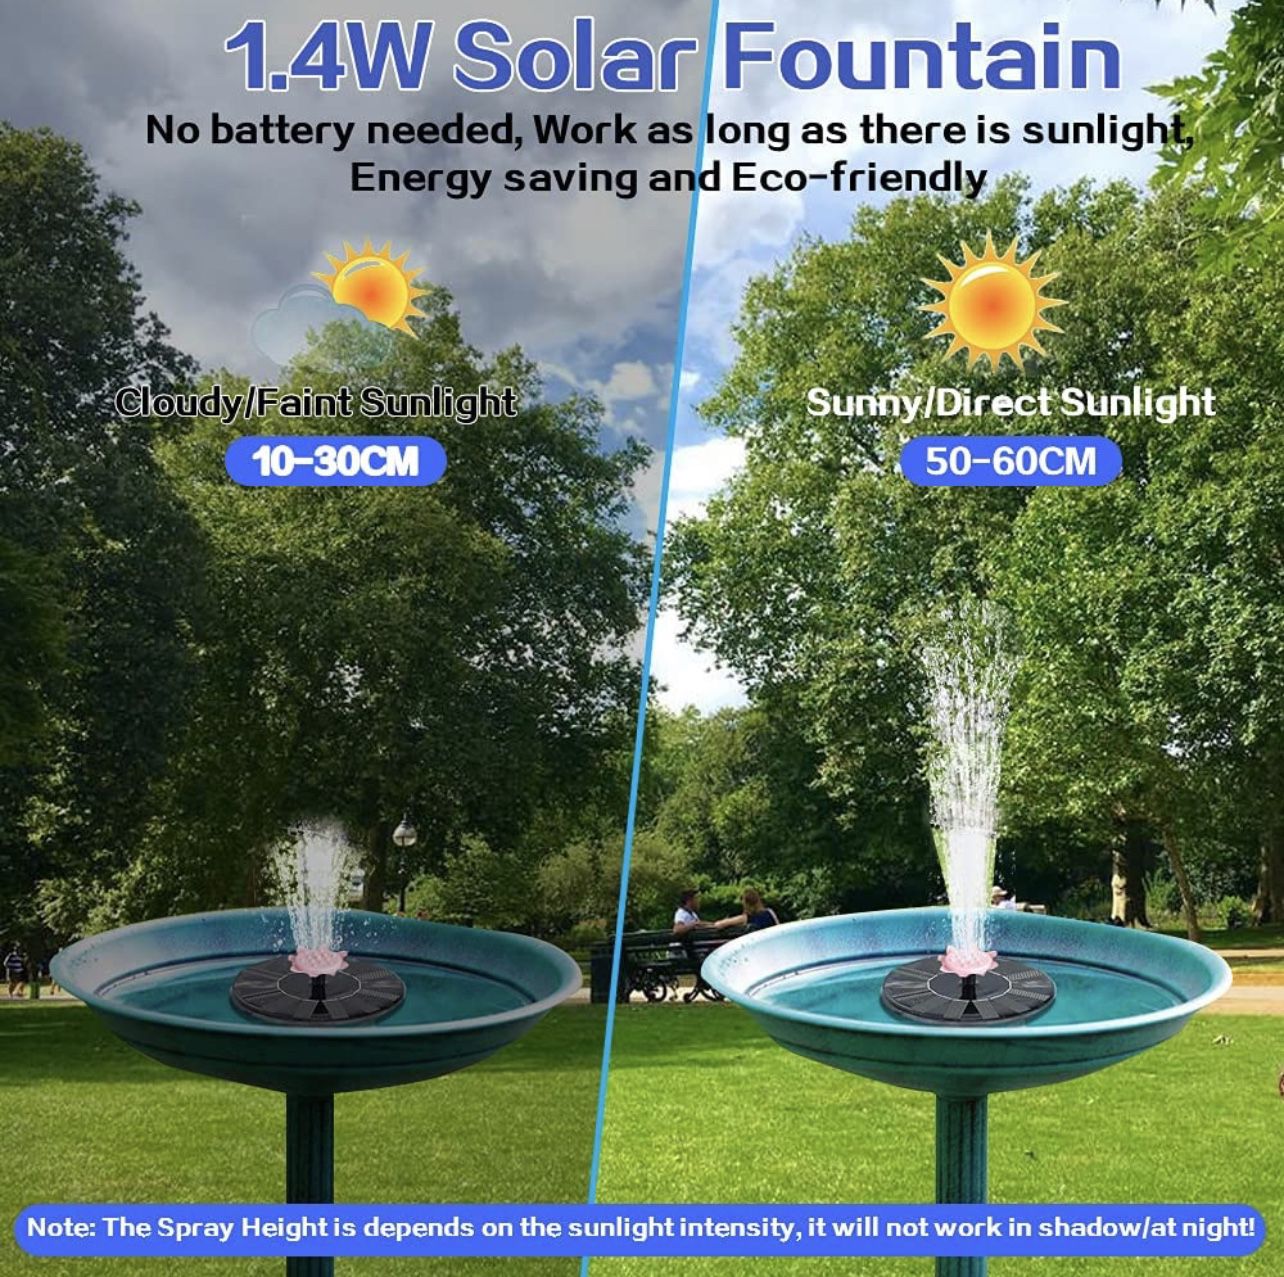  Solar Fountain